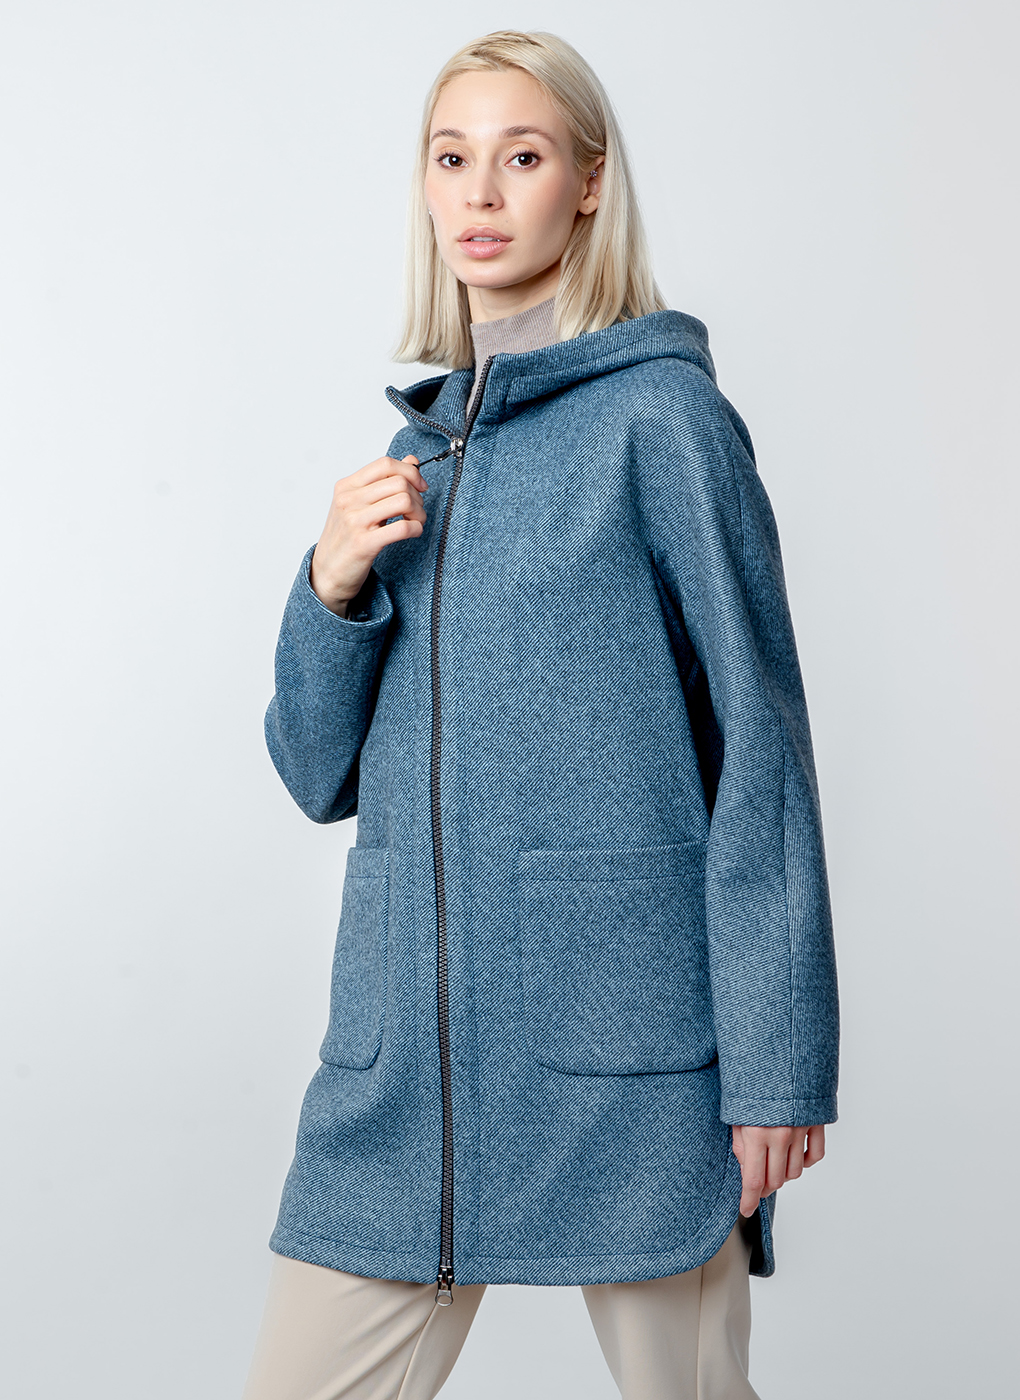 Пальто женское Каляев 52662 синее 42 RU